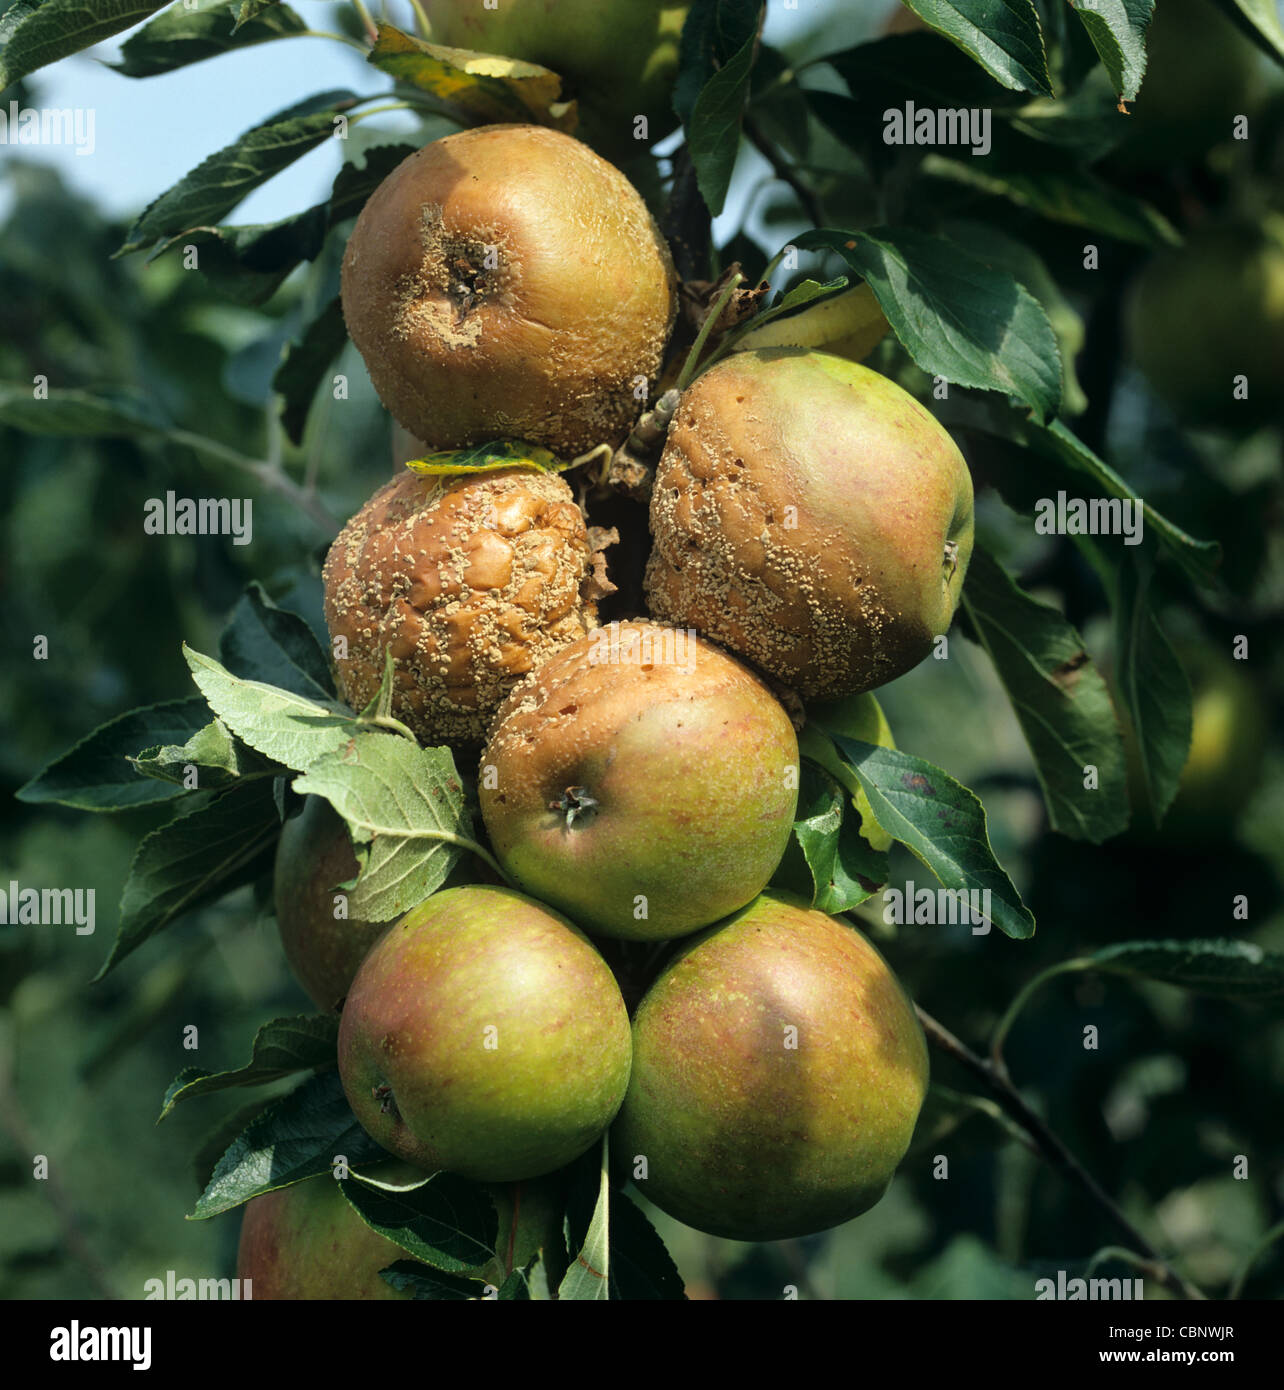 Podredumbre parda (Monilinia fructigena) en manzano maduro Foto de stock